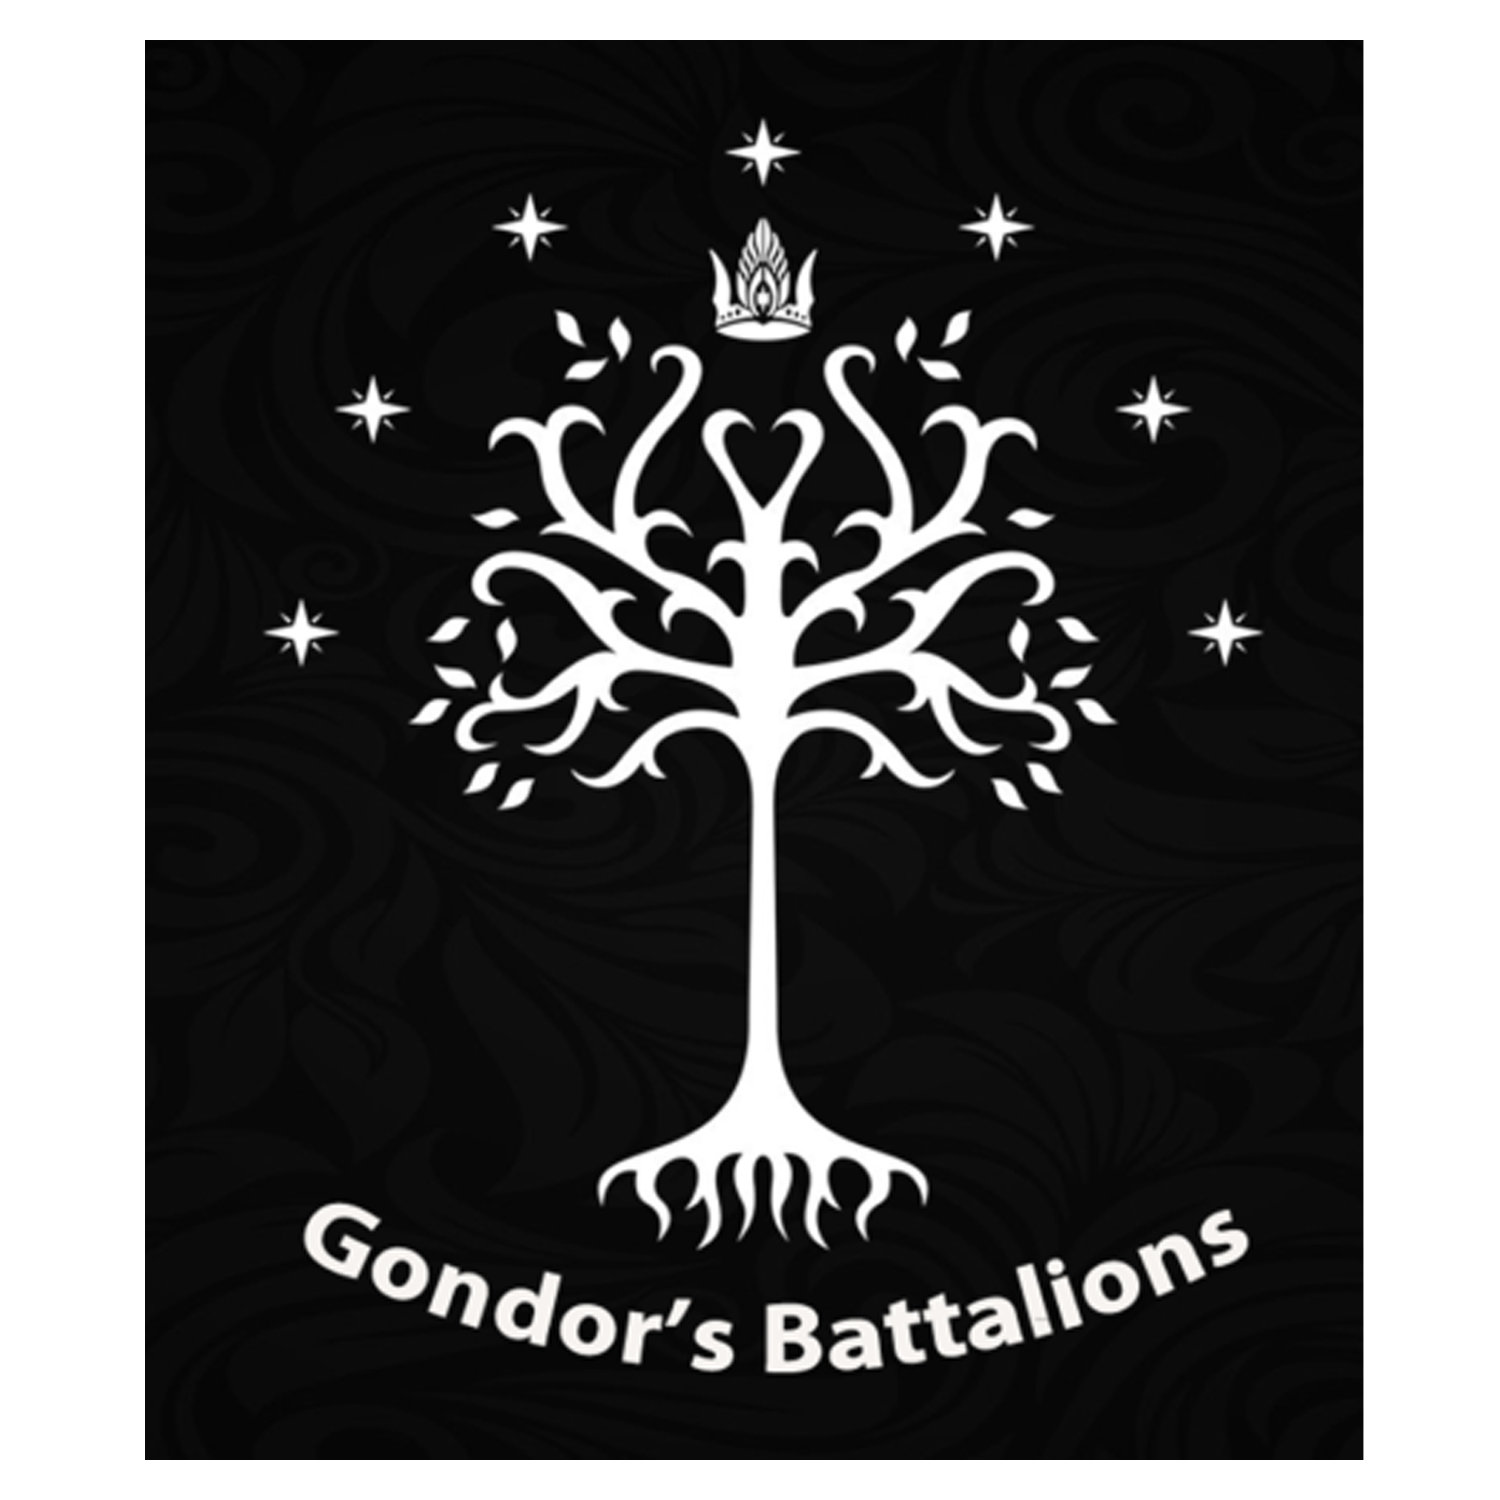 Gondor’s Battalions